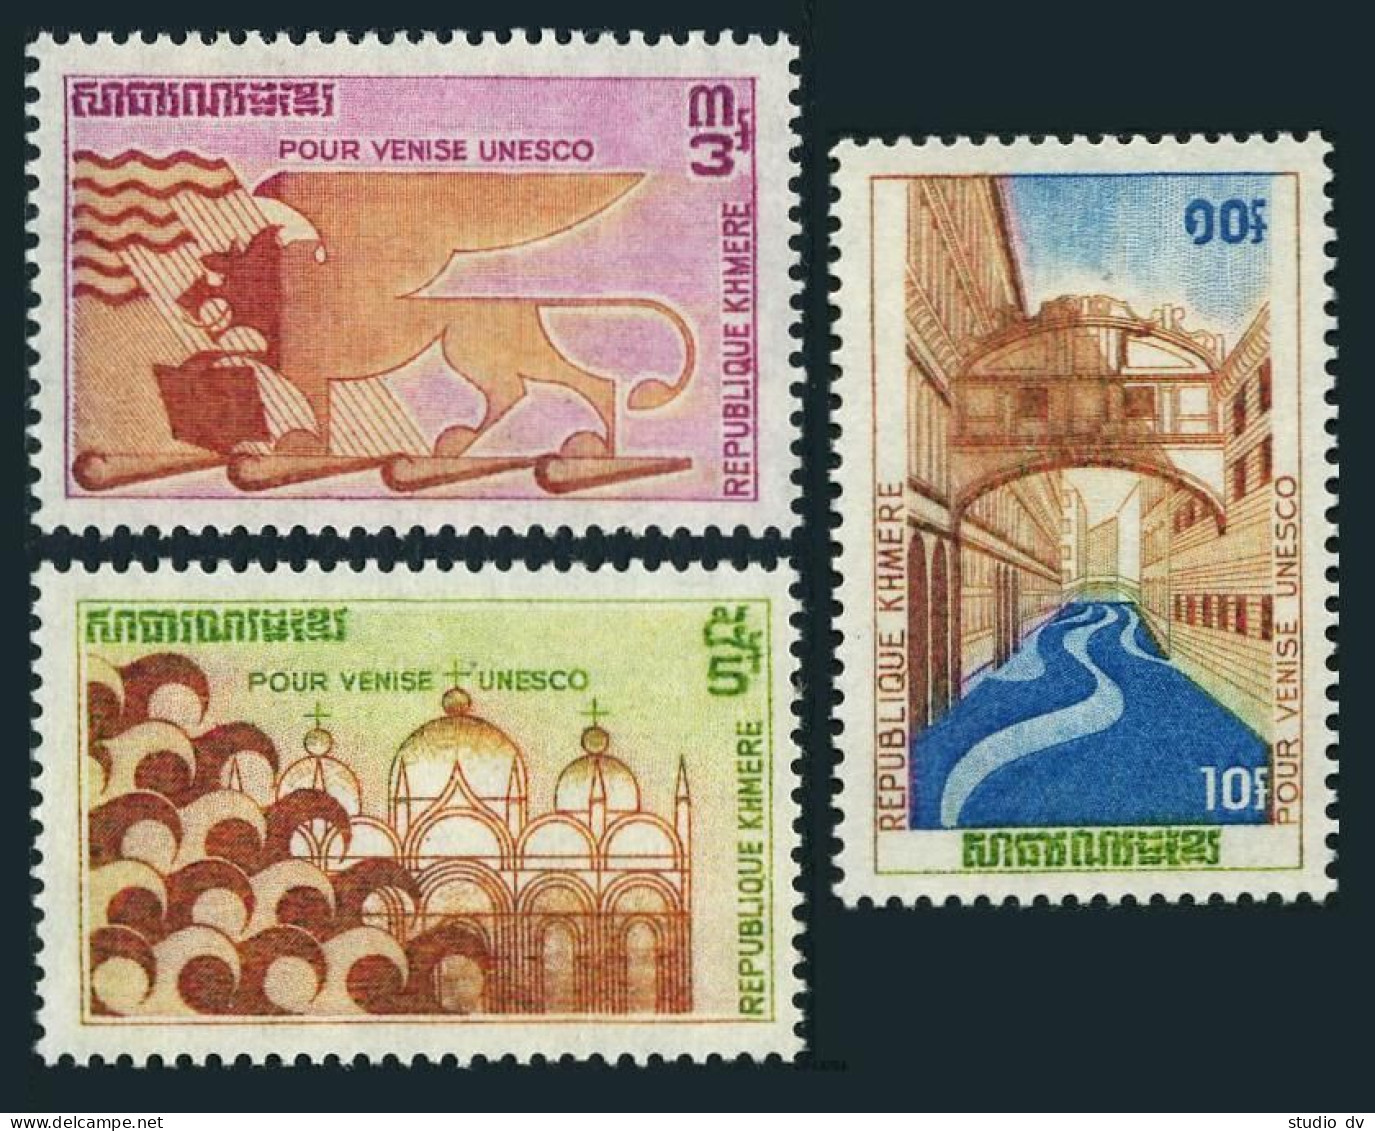 Cambodia 275-277, MNH. Michel 318-320. UNESCO Campaign To Save Venice, 1972. - Kambodscha